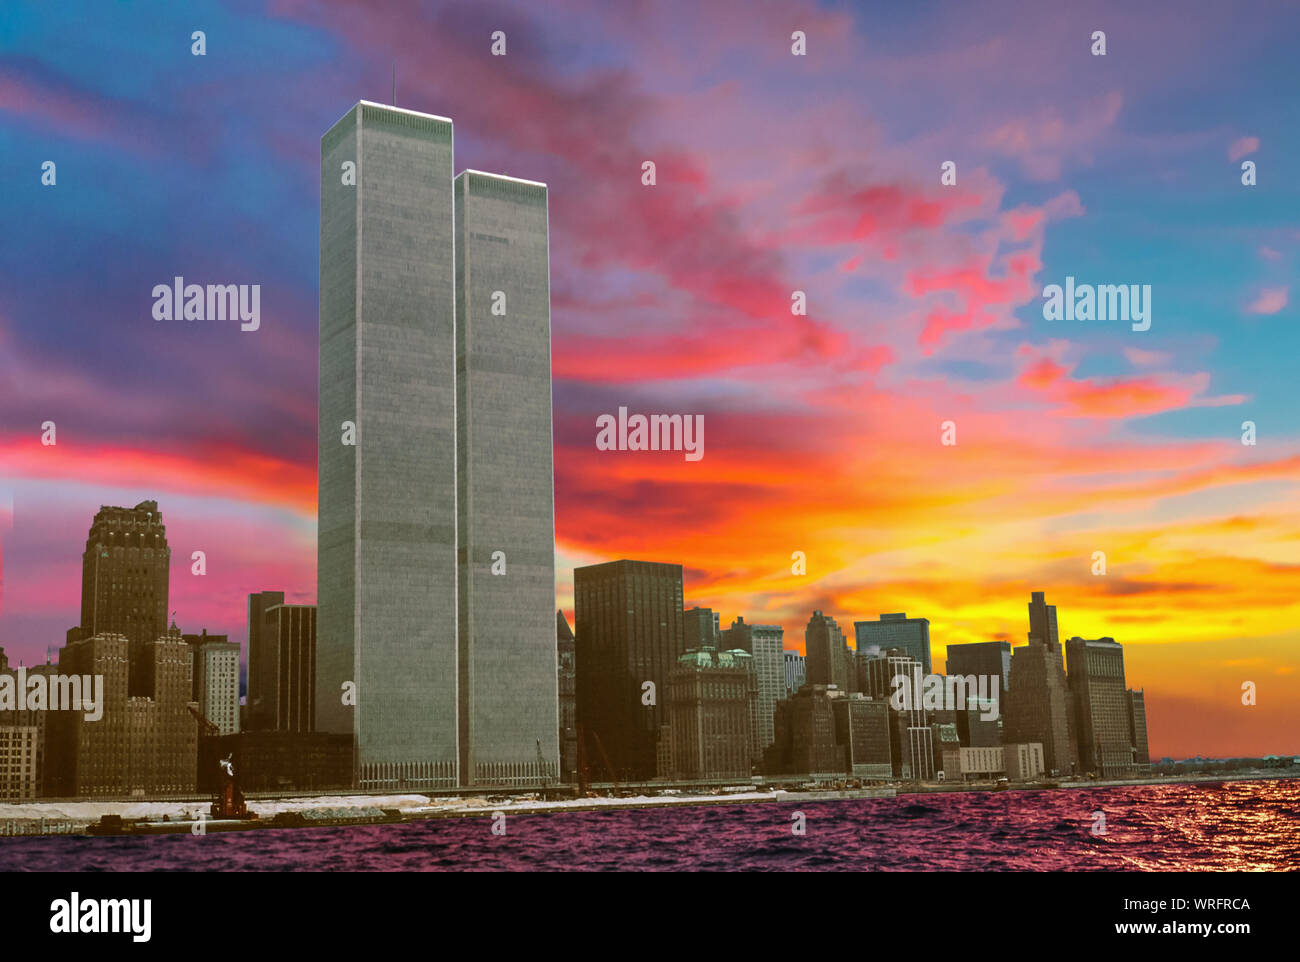 Wahrzeichen der Twin Towers an bunten Sonnenuntergang Himmel. Archivierung und das historische Stadtbild von New York Skyline von New Jersey. Lower Manhattan in New York. Stockfoto